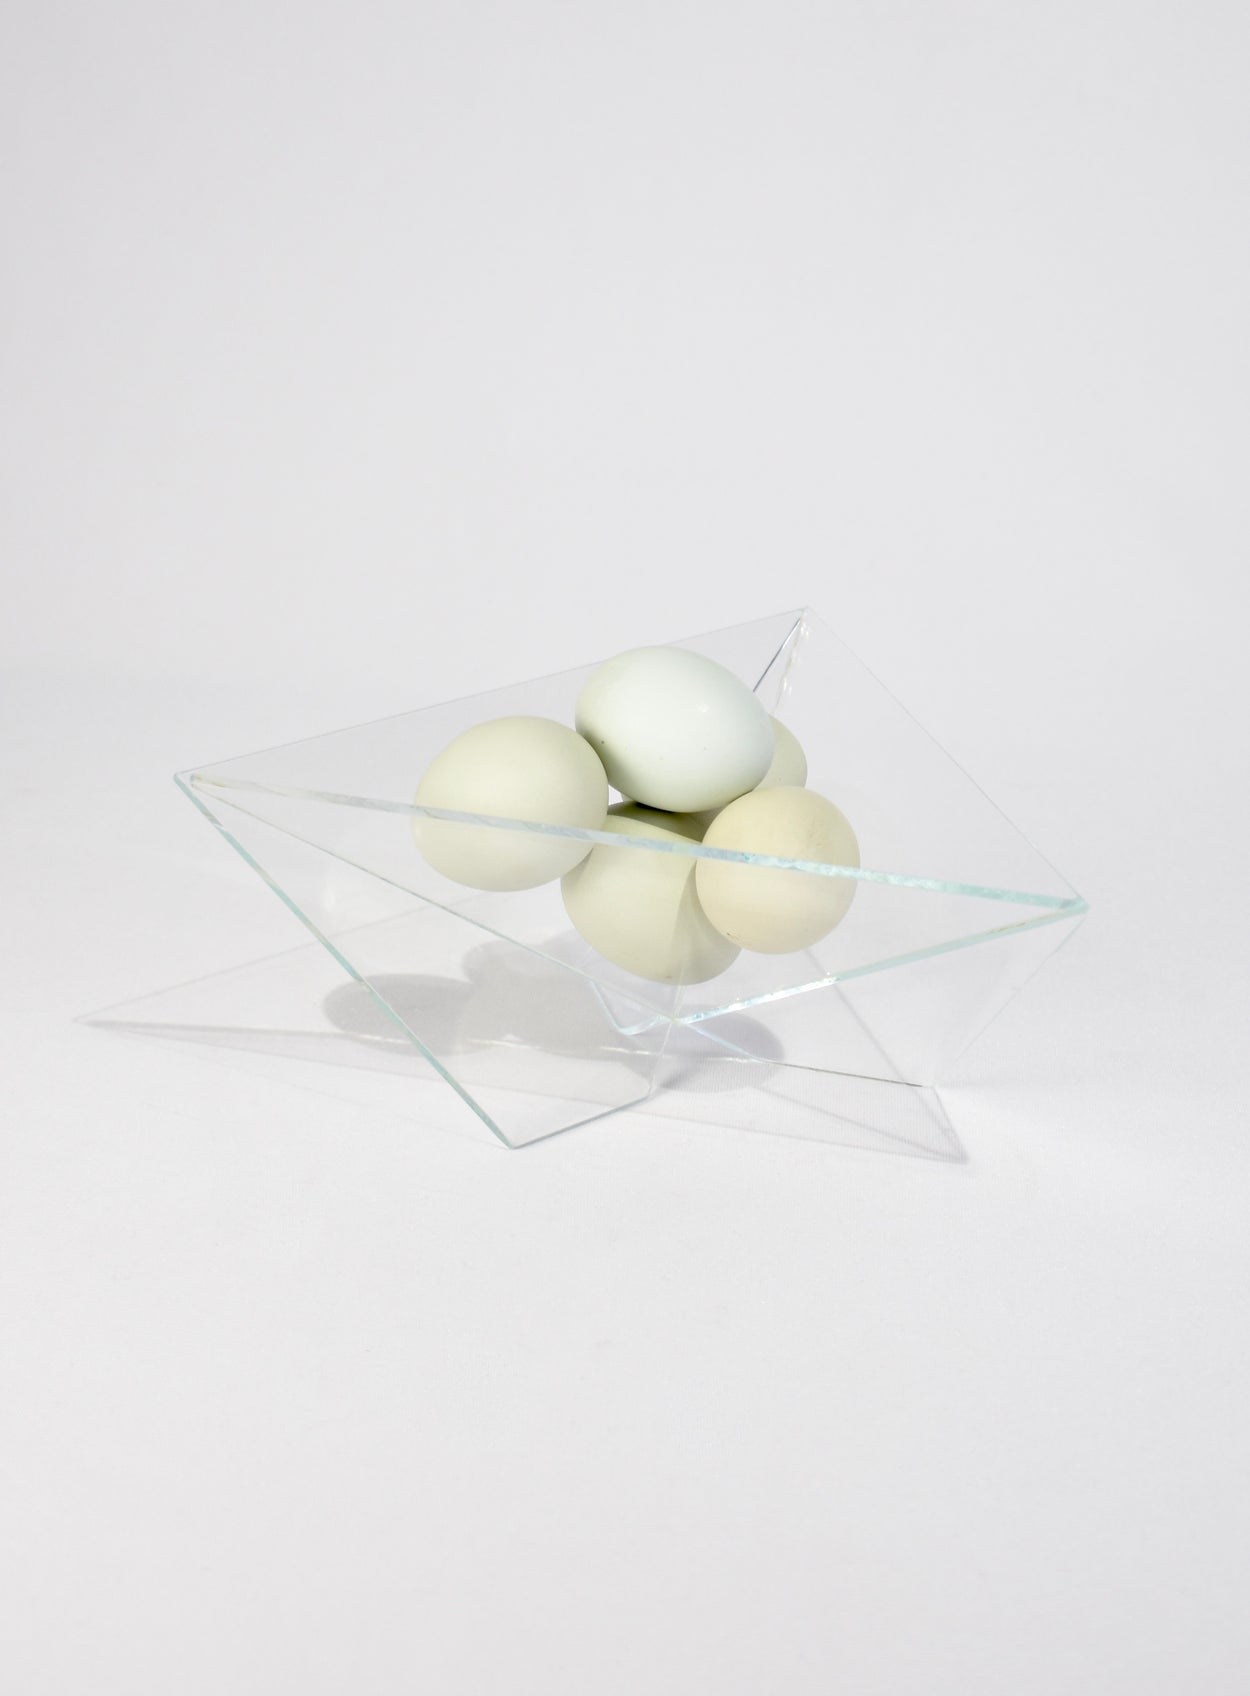 Minimalist Glass Bowl